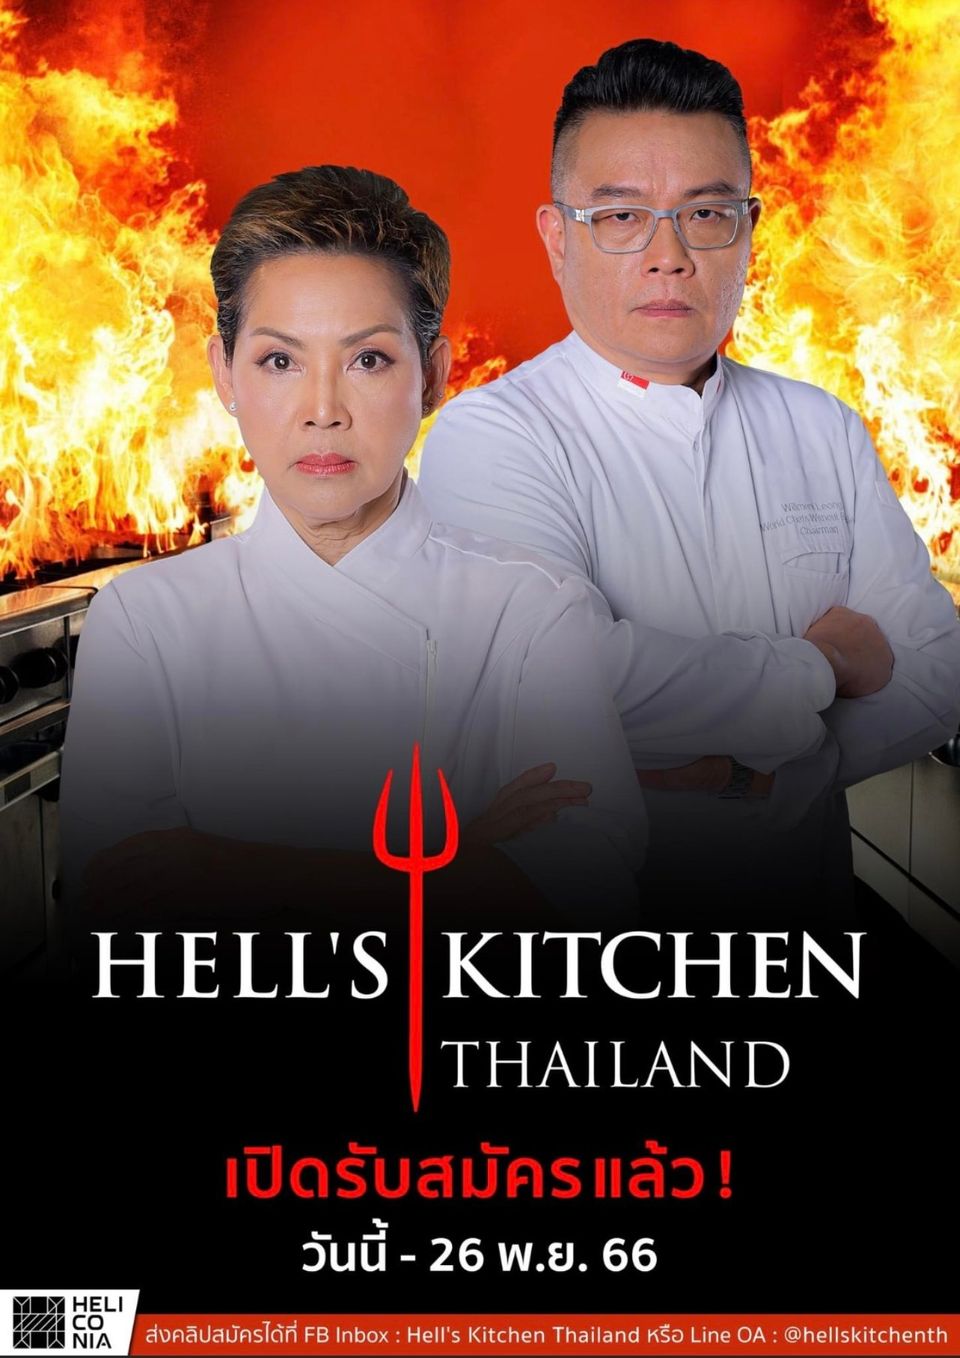 Hell’s Kitchen Thailand เปิดรับสมัครผู้เข้าแข่งขันแล้ววันนี้!!